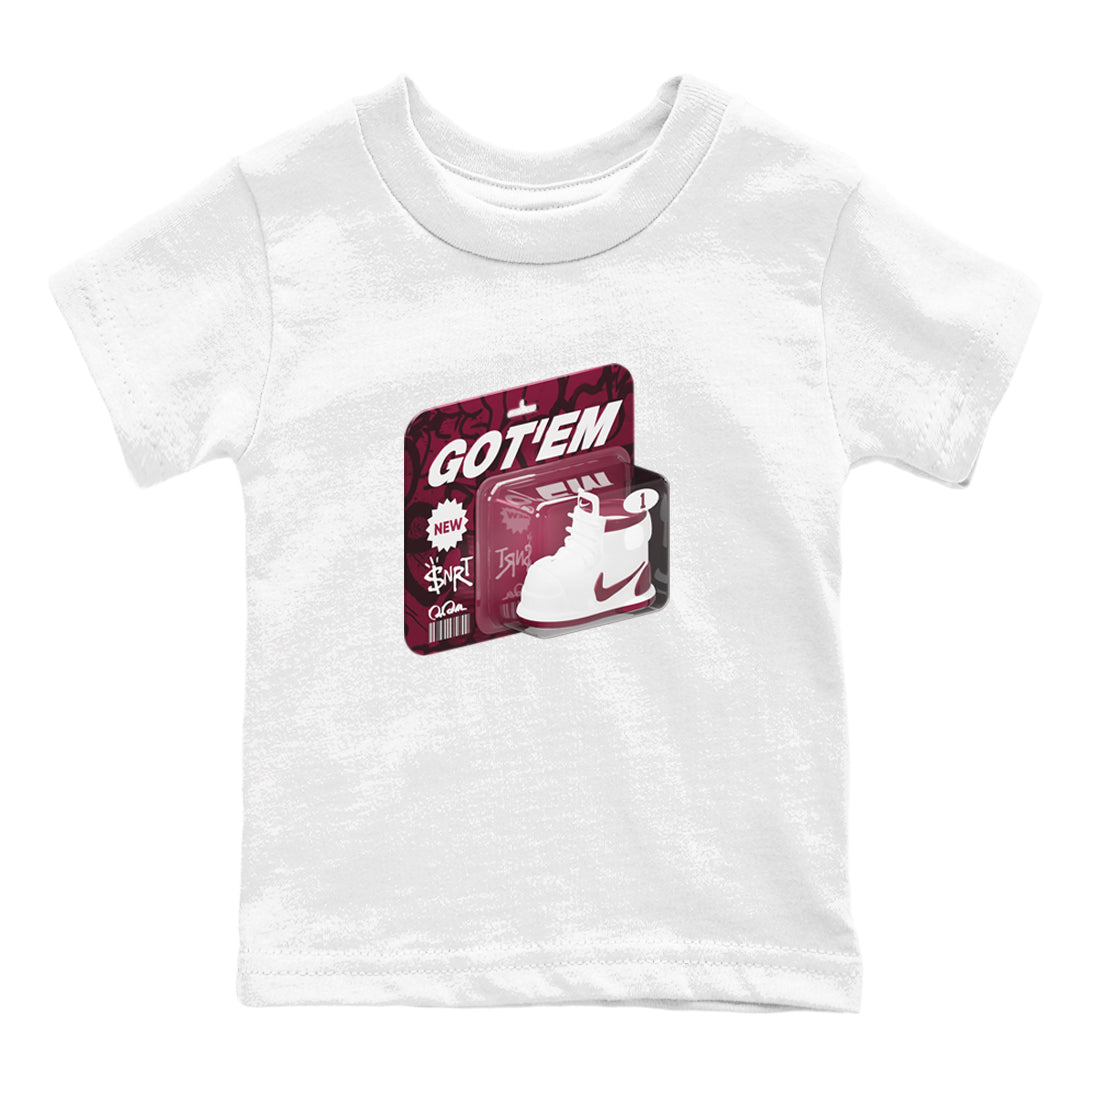 1s Metallic Burgundy shirt to match jordans Vintage Toy Packaging sneaker tees AJ1 Metallic Burgundy SNRT Sneaker Release Tees Baby Toddler White 2 T-Shirt